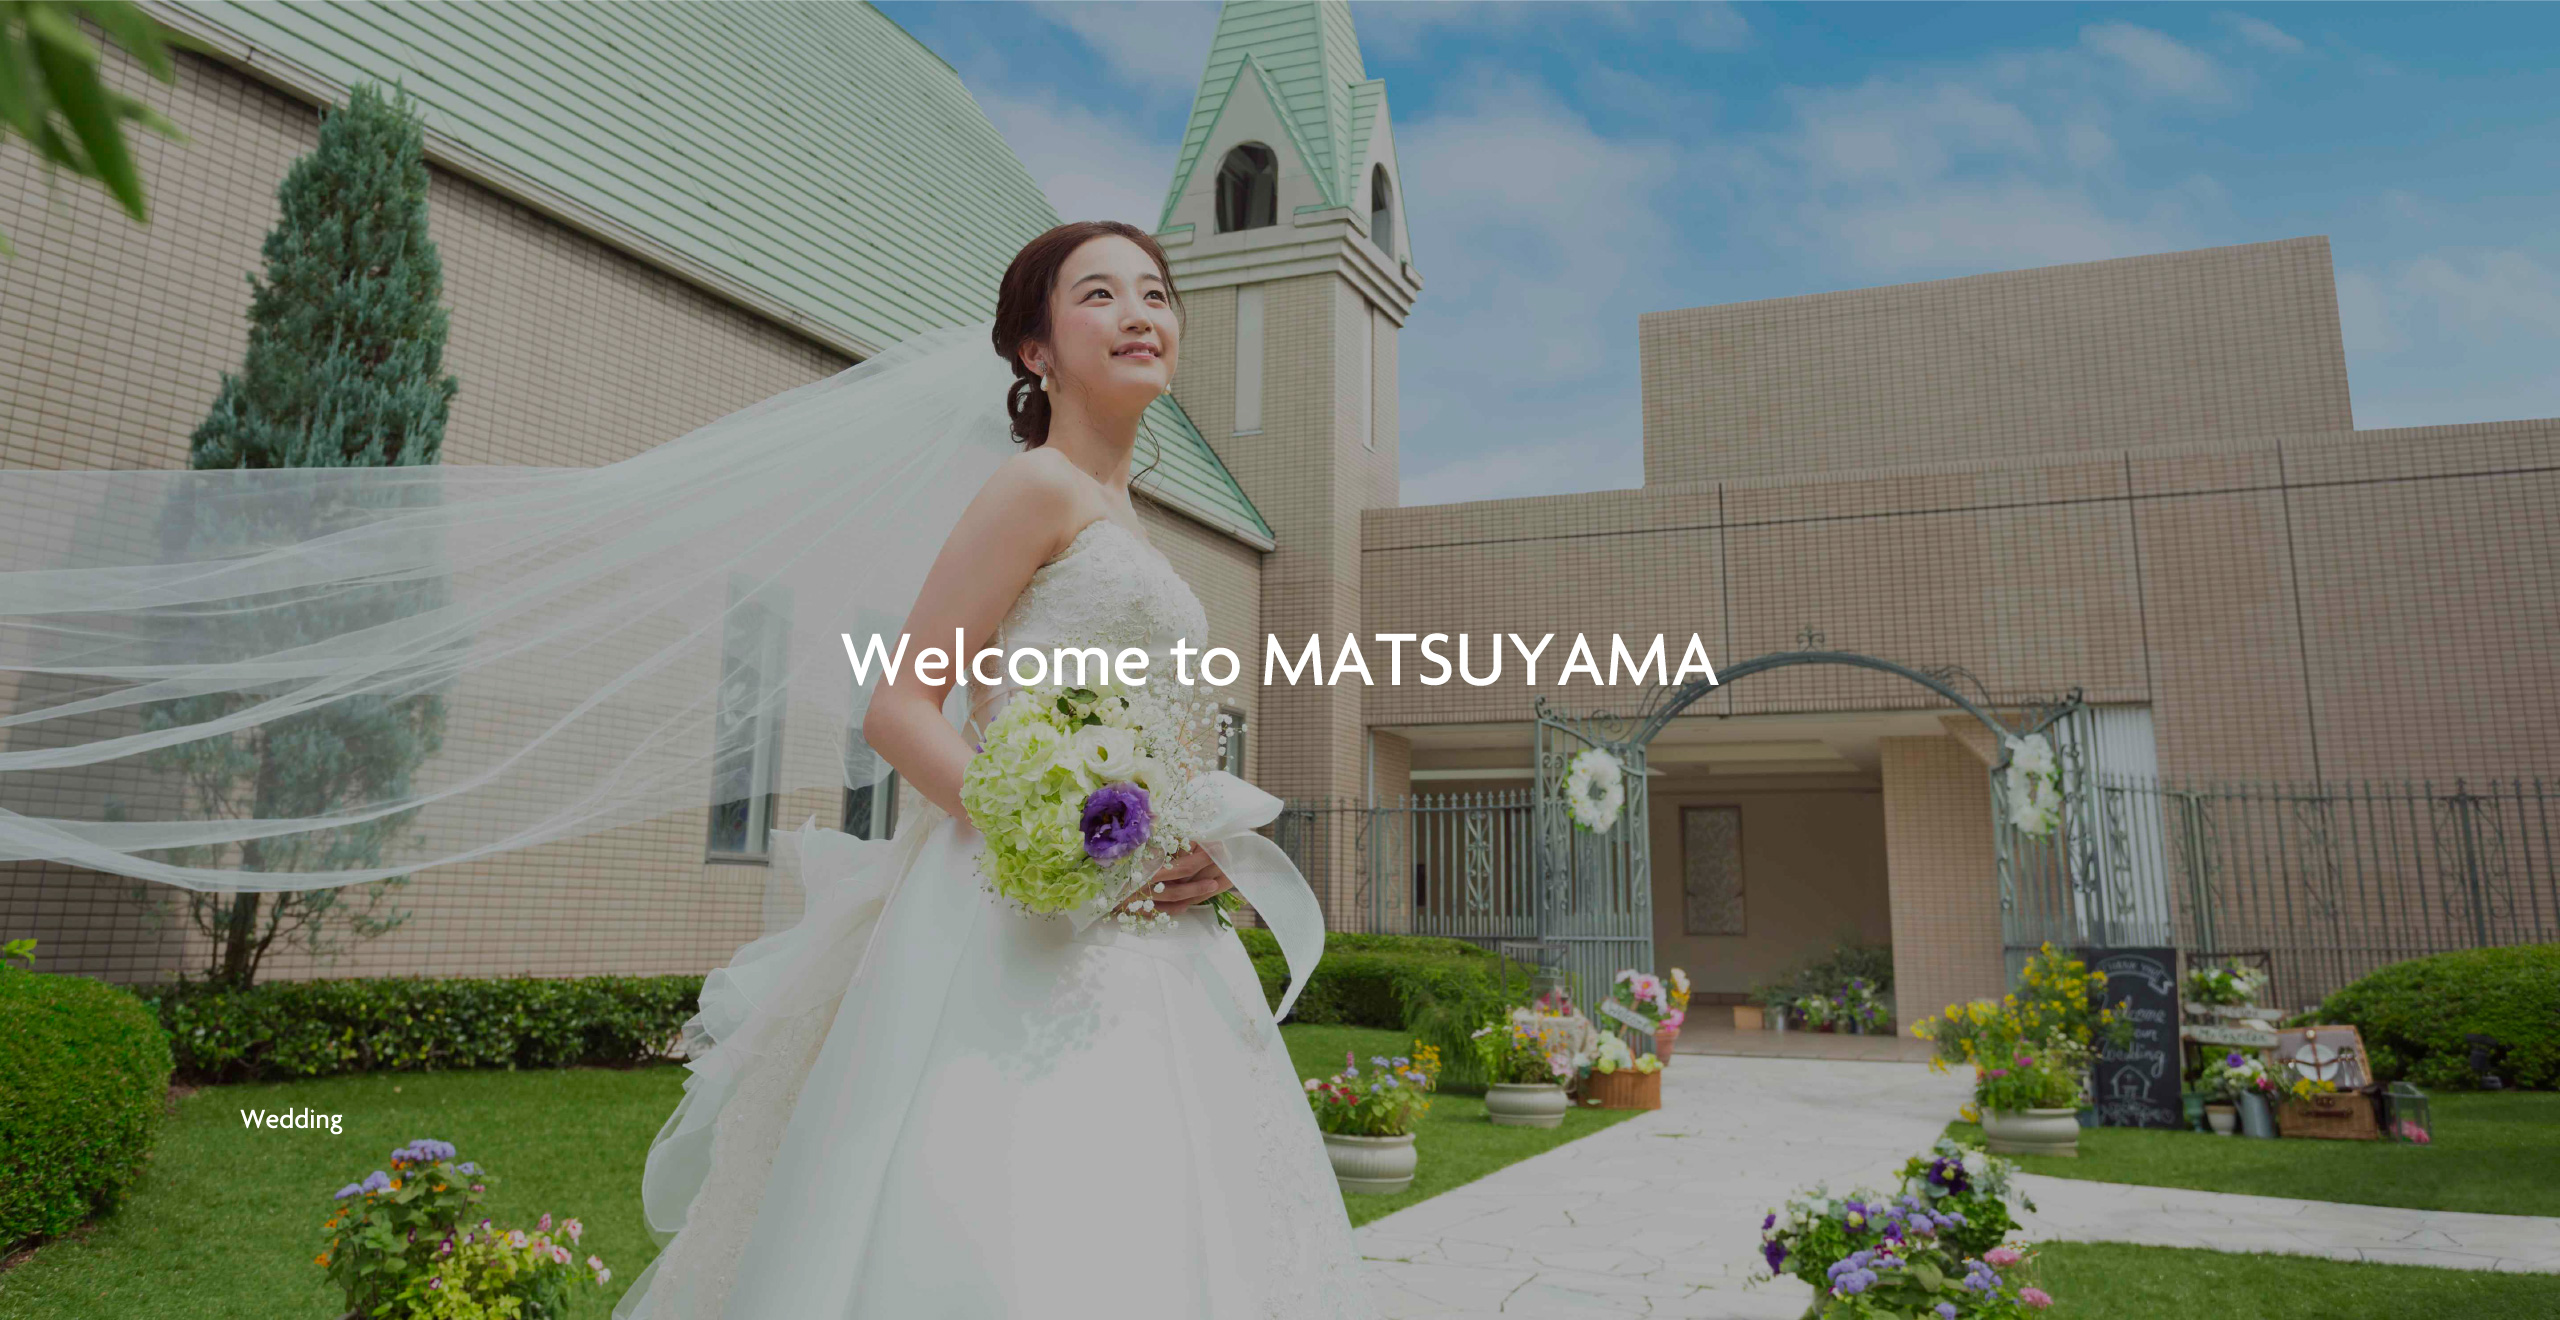 wedding | Welcome to MATSUYAMA